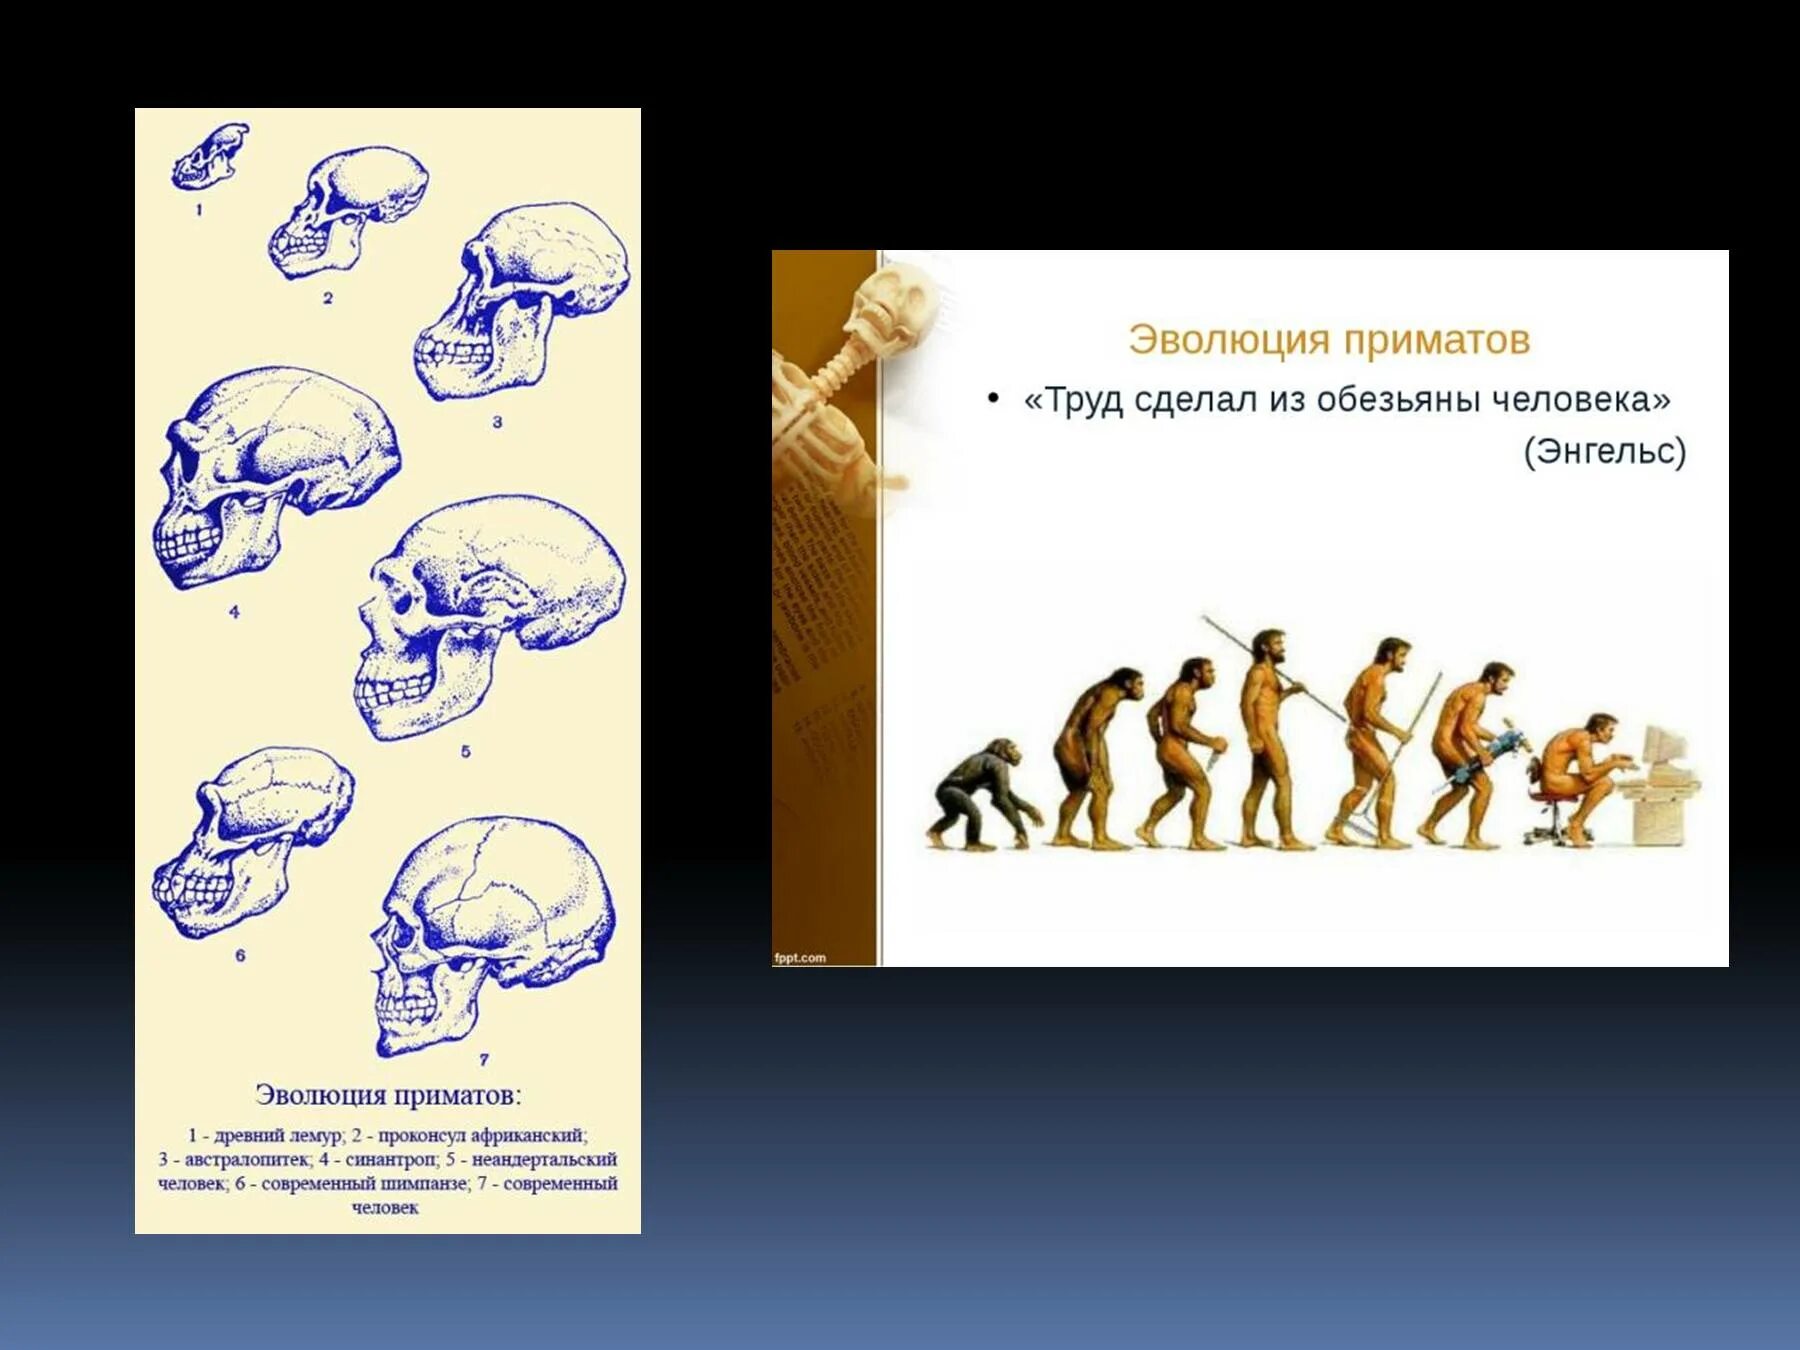 Процесс превращения человека в обезьяну. Эволюция человека до обезьяны. Эволюция приматов. Происхождение человека от обезьяны. Эволюция человека от обезьяны до человека.